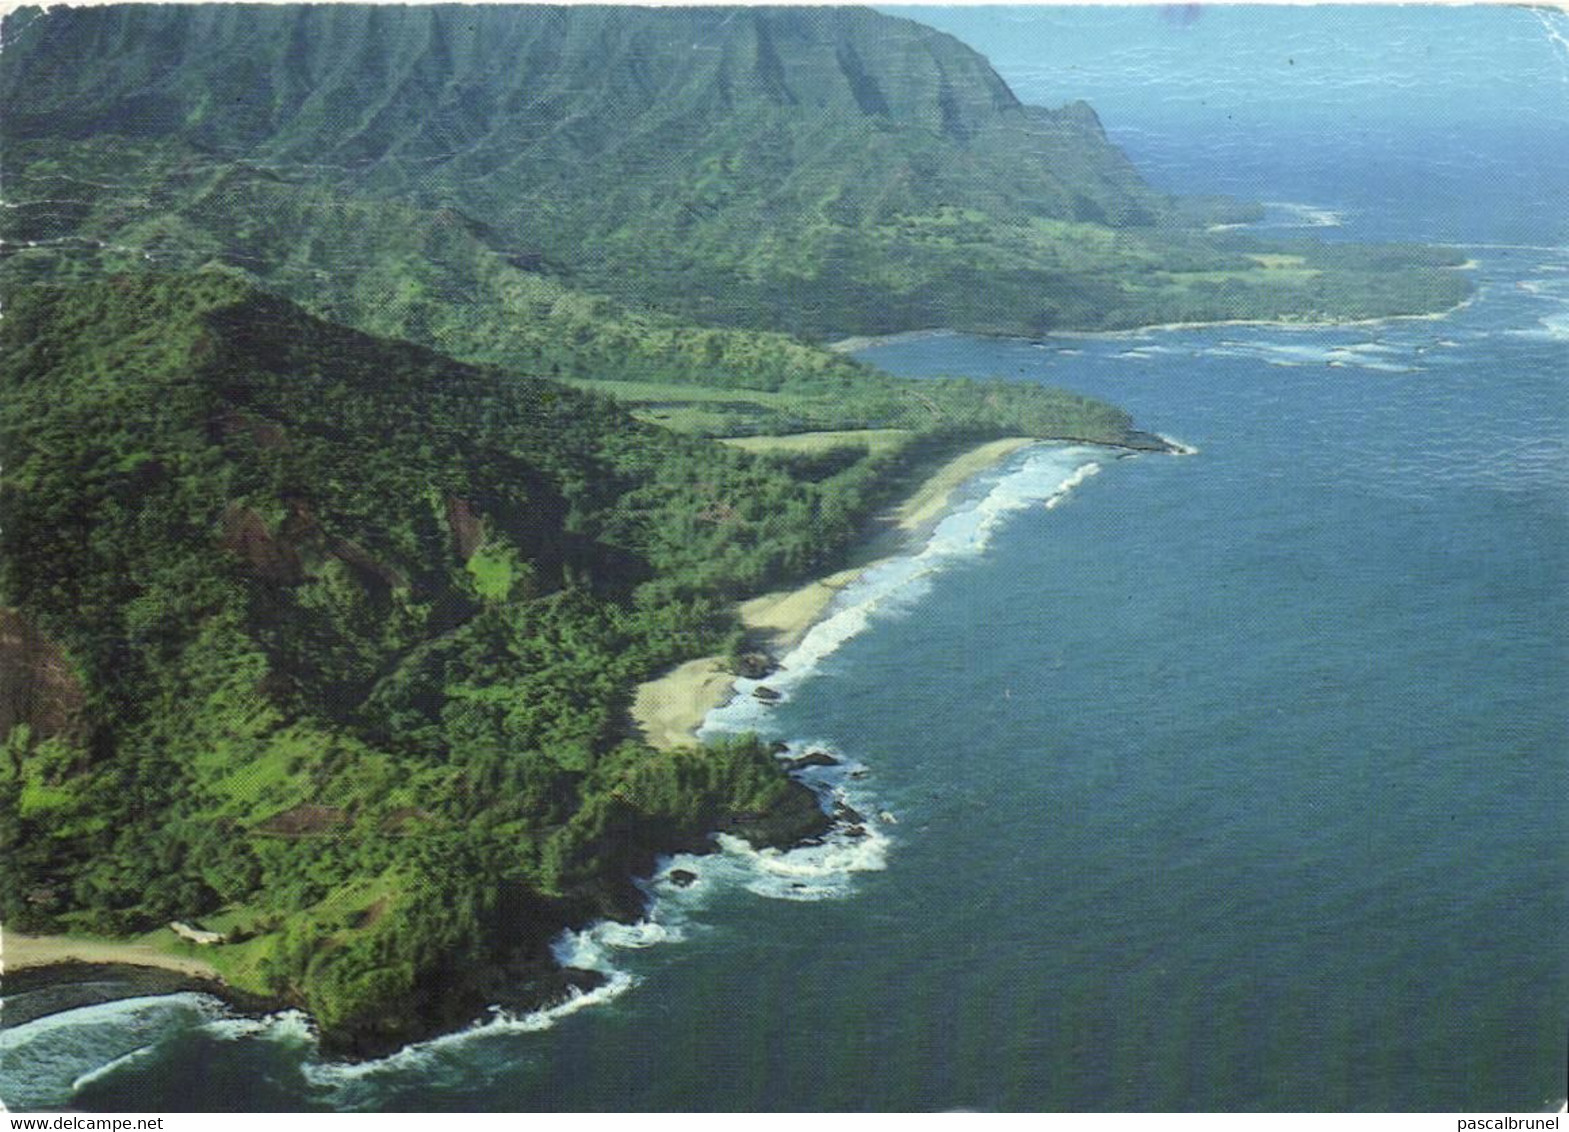 KAUAI - THE ISLAND OF KAUAI - Kauai